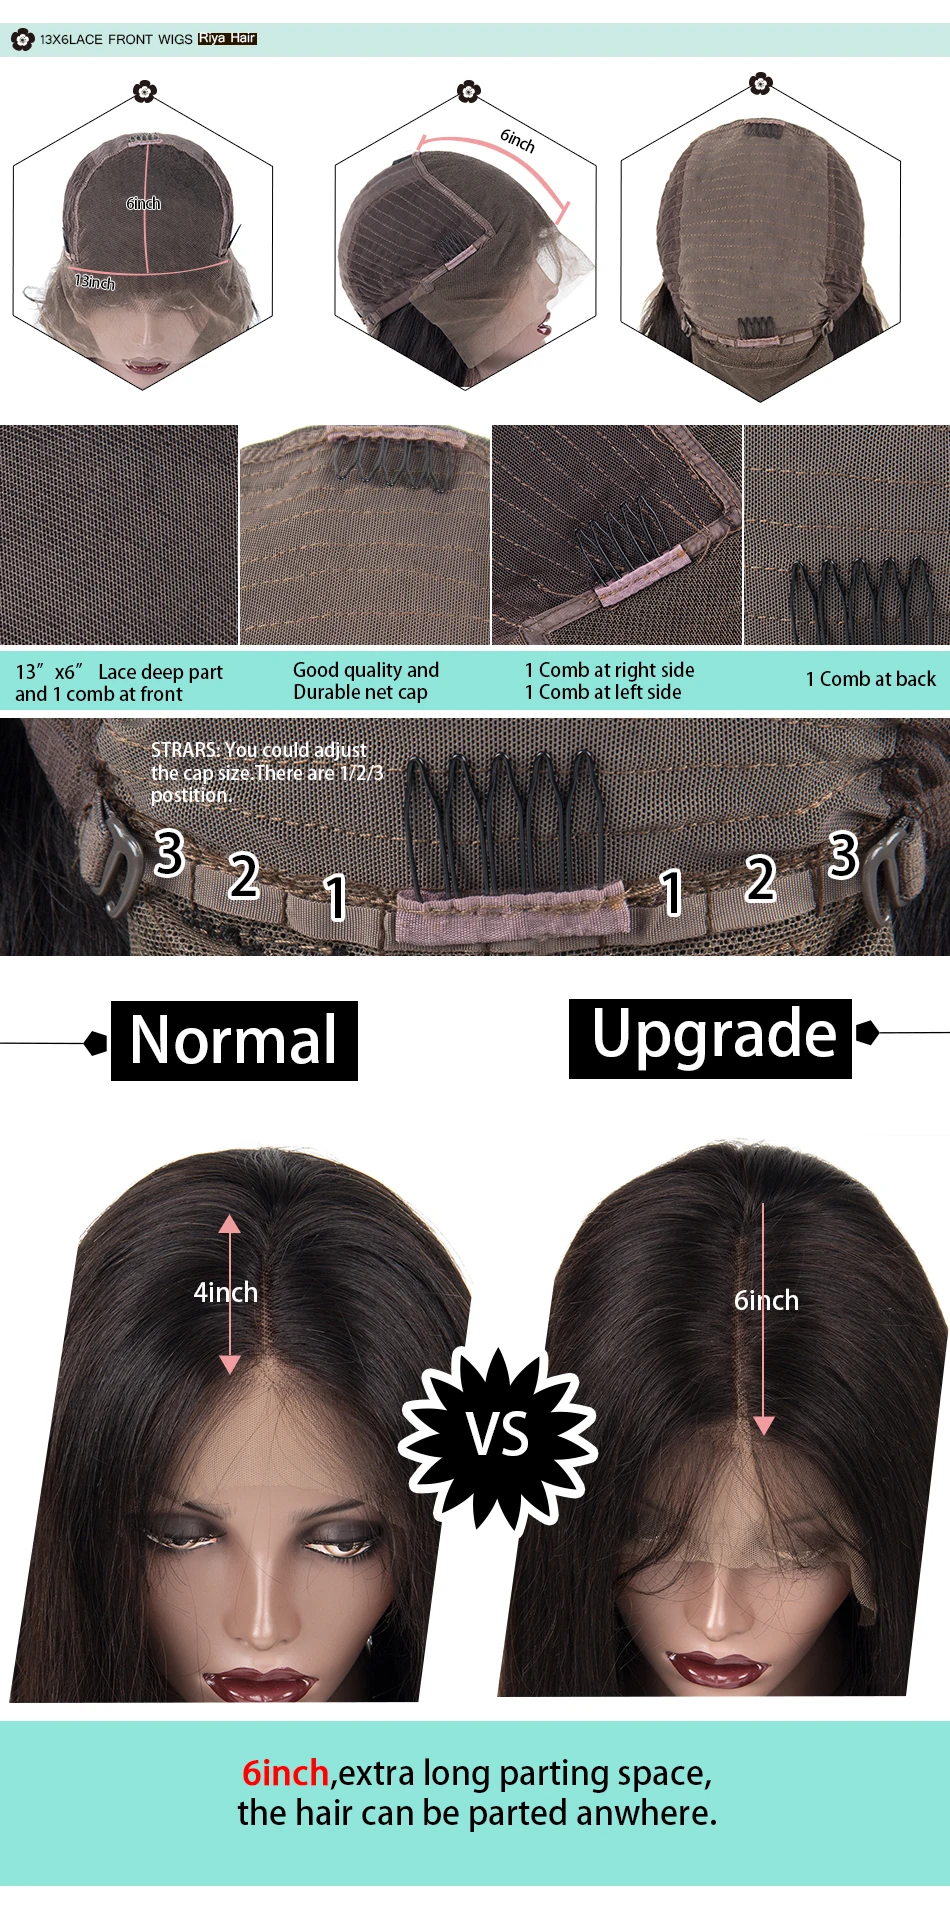 13X6 глубокий Синтетические волосы на кружеве человеческих волос парики для чернокожих Для женщин предварительно вырезанные с детскими волосами H8-24 застежка свободная волна парик бразильский Реми Riya